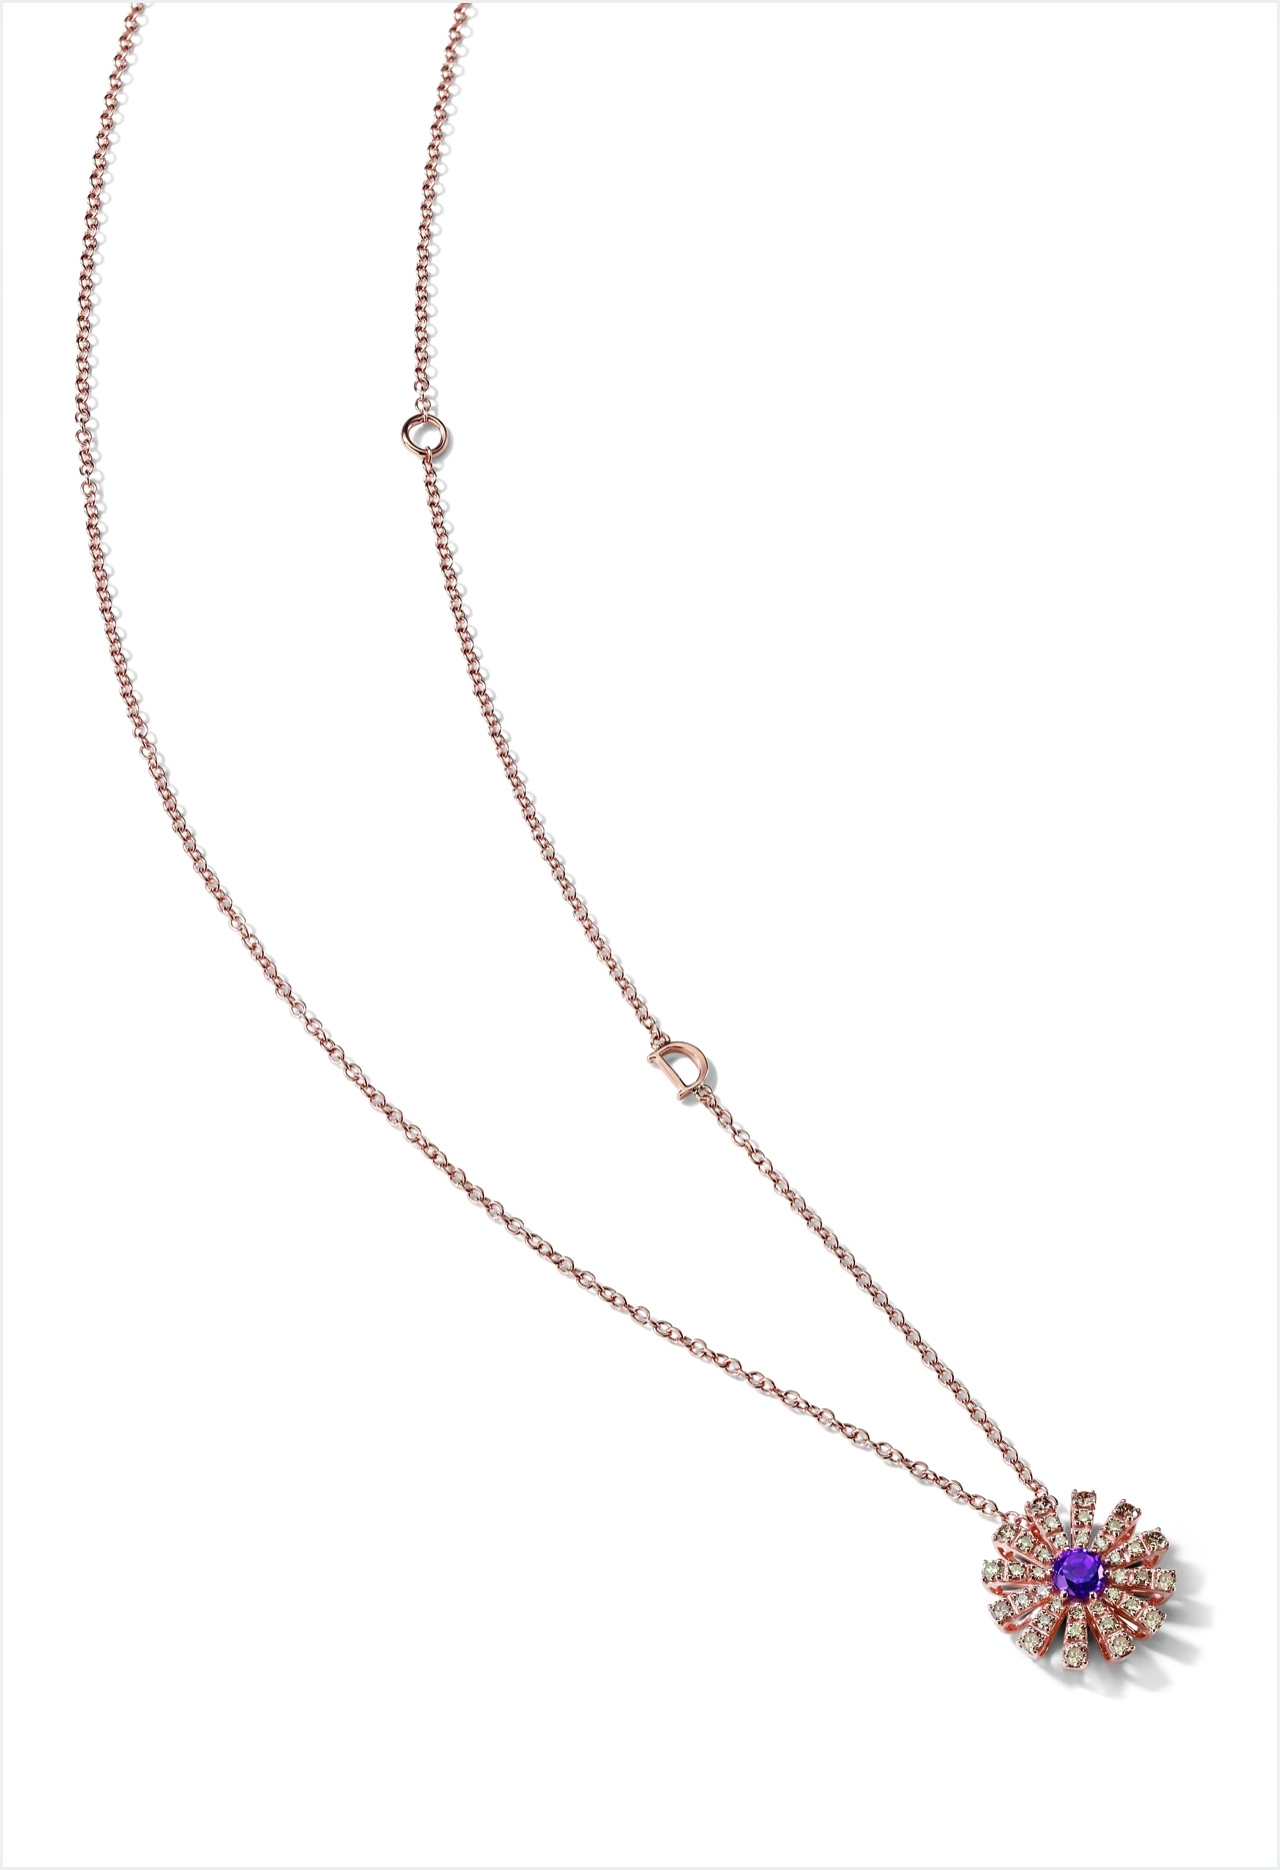 사진 : 다미아니, 핑크골드와 자수정& 브라운 다이아몬드의 조화. Margherita necklace in pink gold, brown diamonds and amethyst